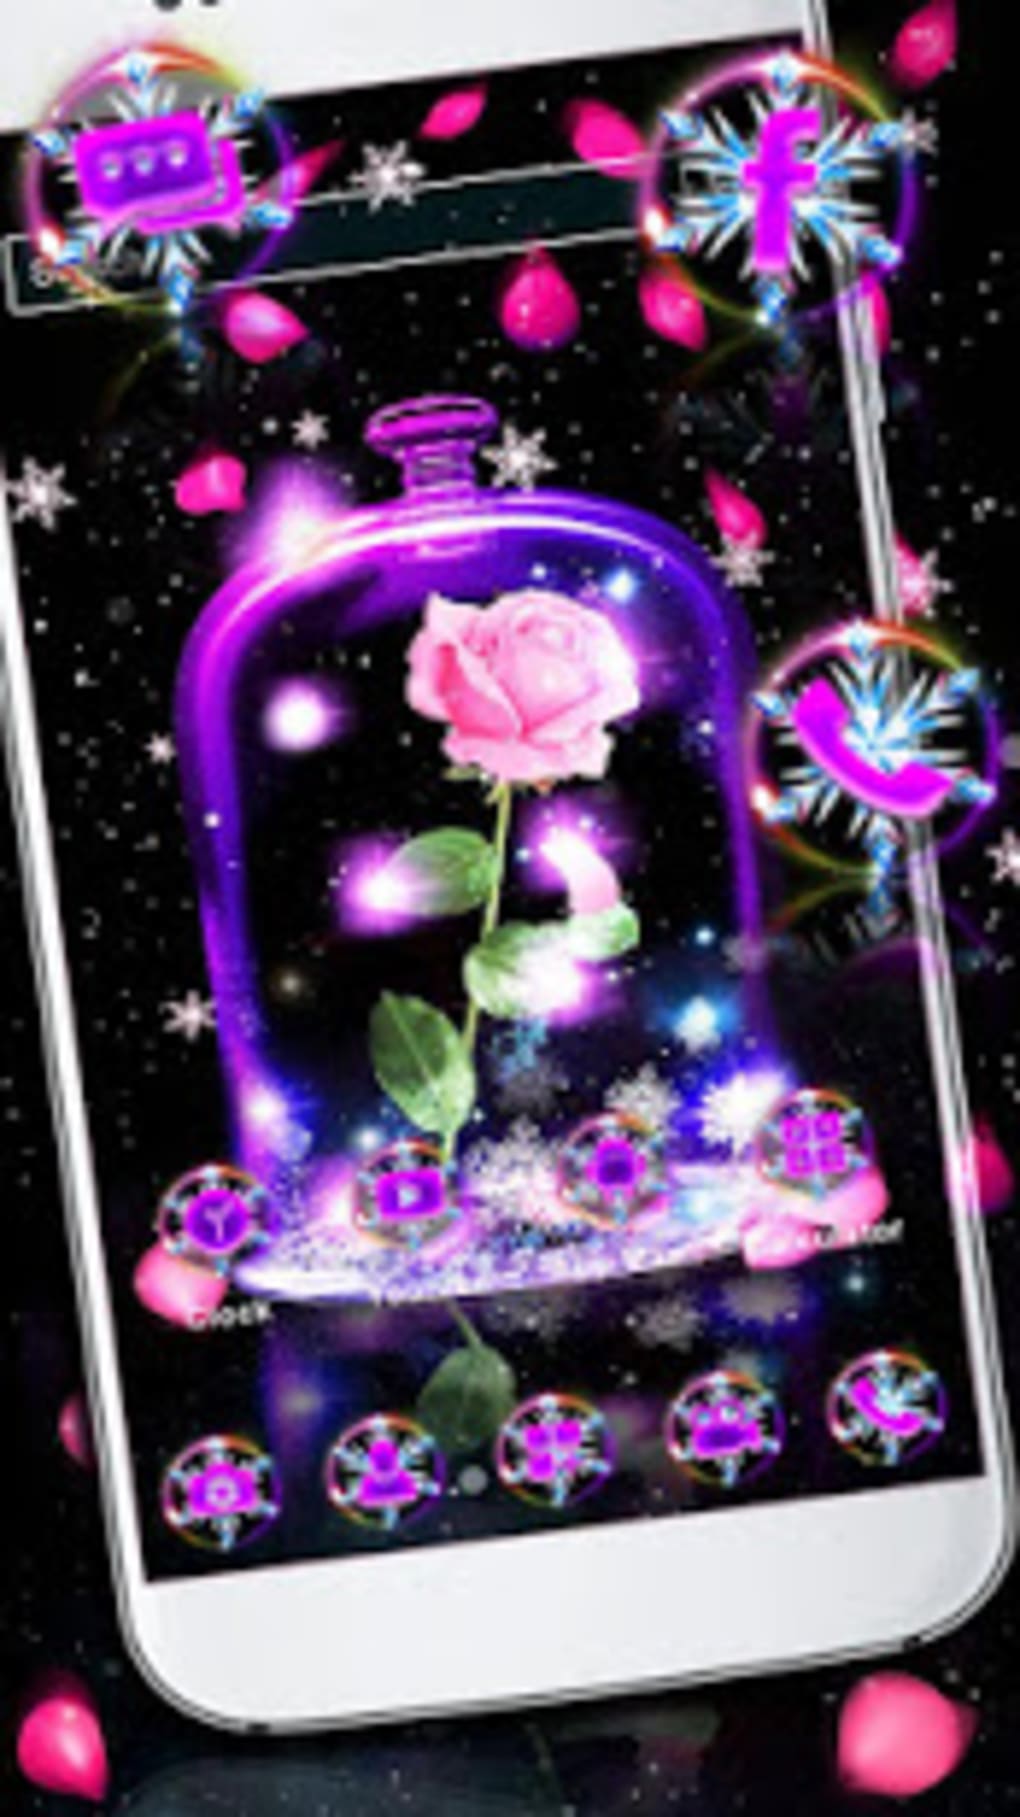 galaxy live wallpapers hd,caja del teléfono móvil,accesorios para teléfono móvil,violeta,púrpura,tecnología